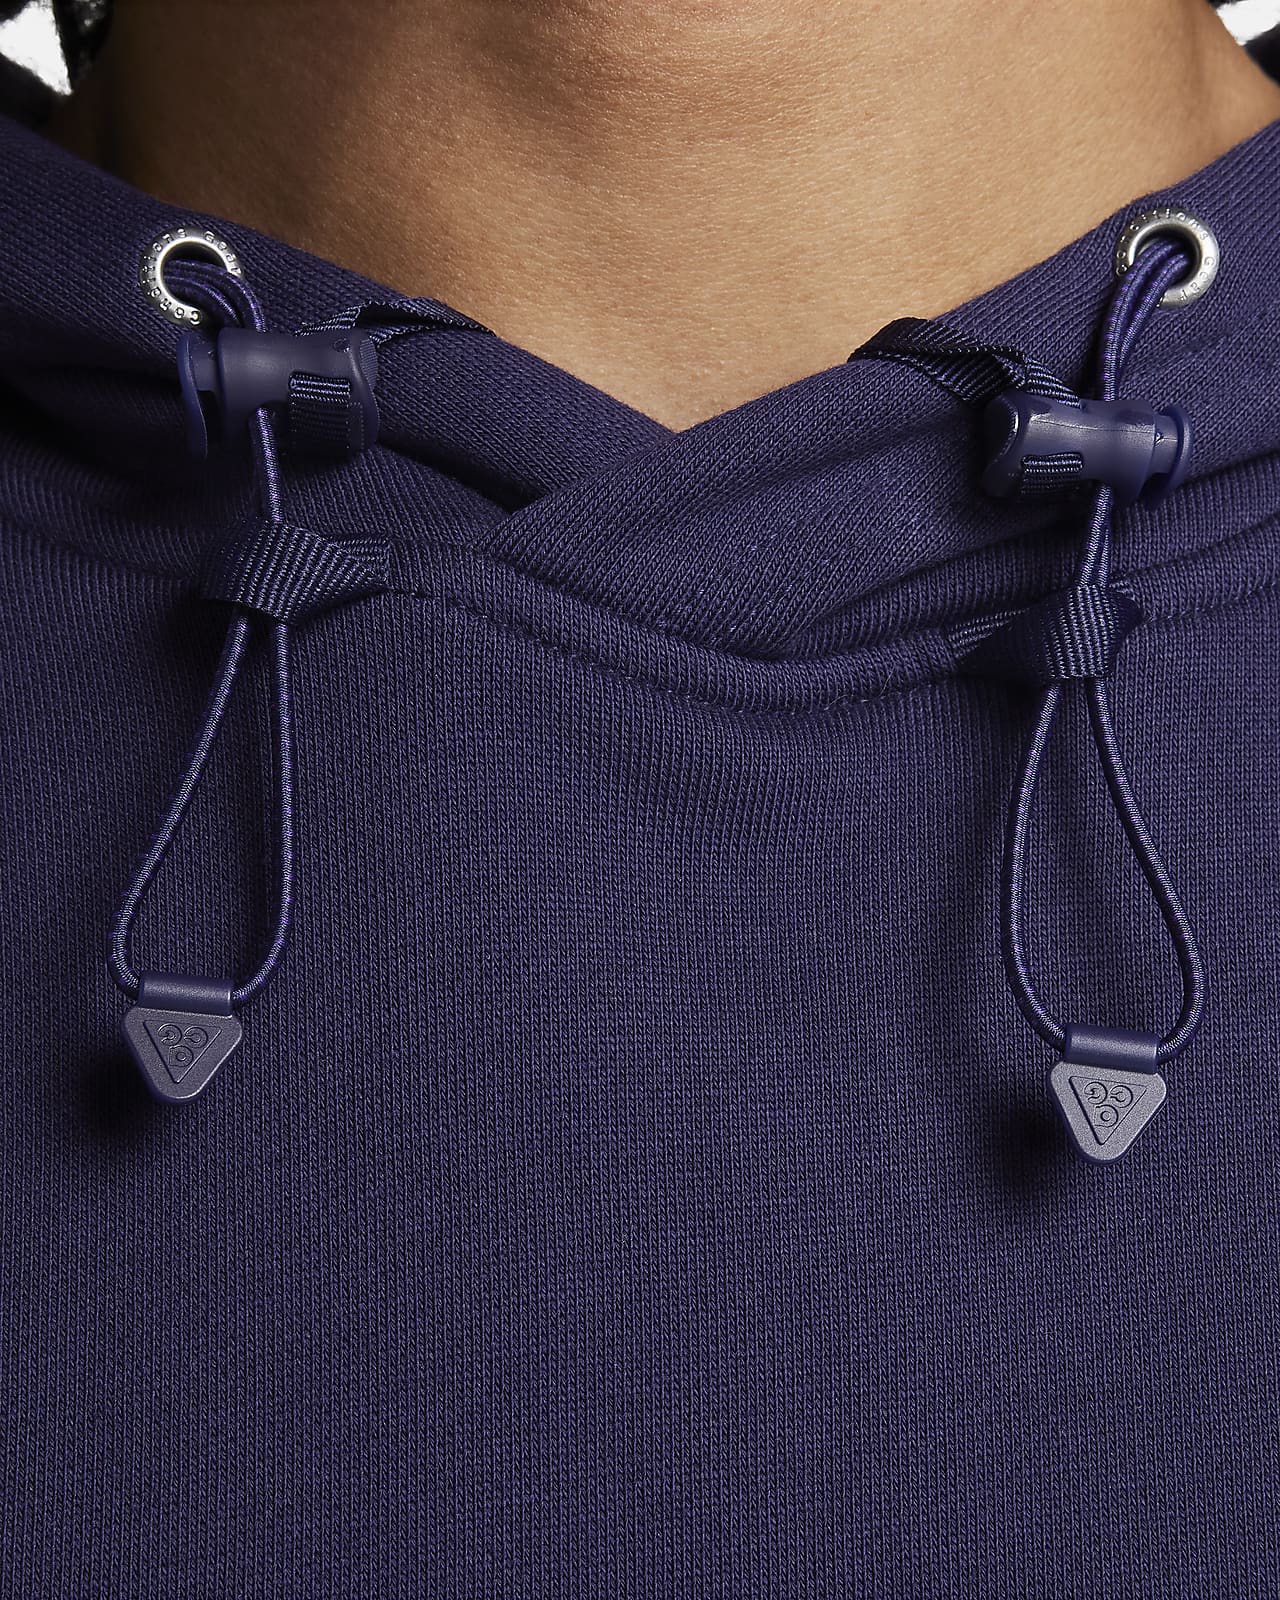 Men's Zip Up Hoodies, Nike & Polo Zip Up Hoodies